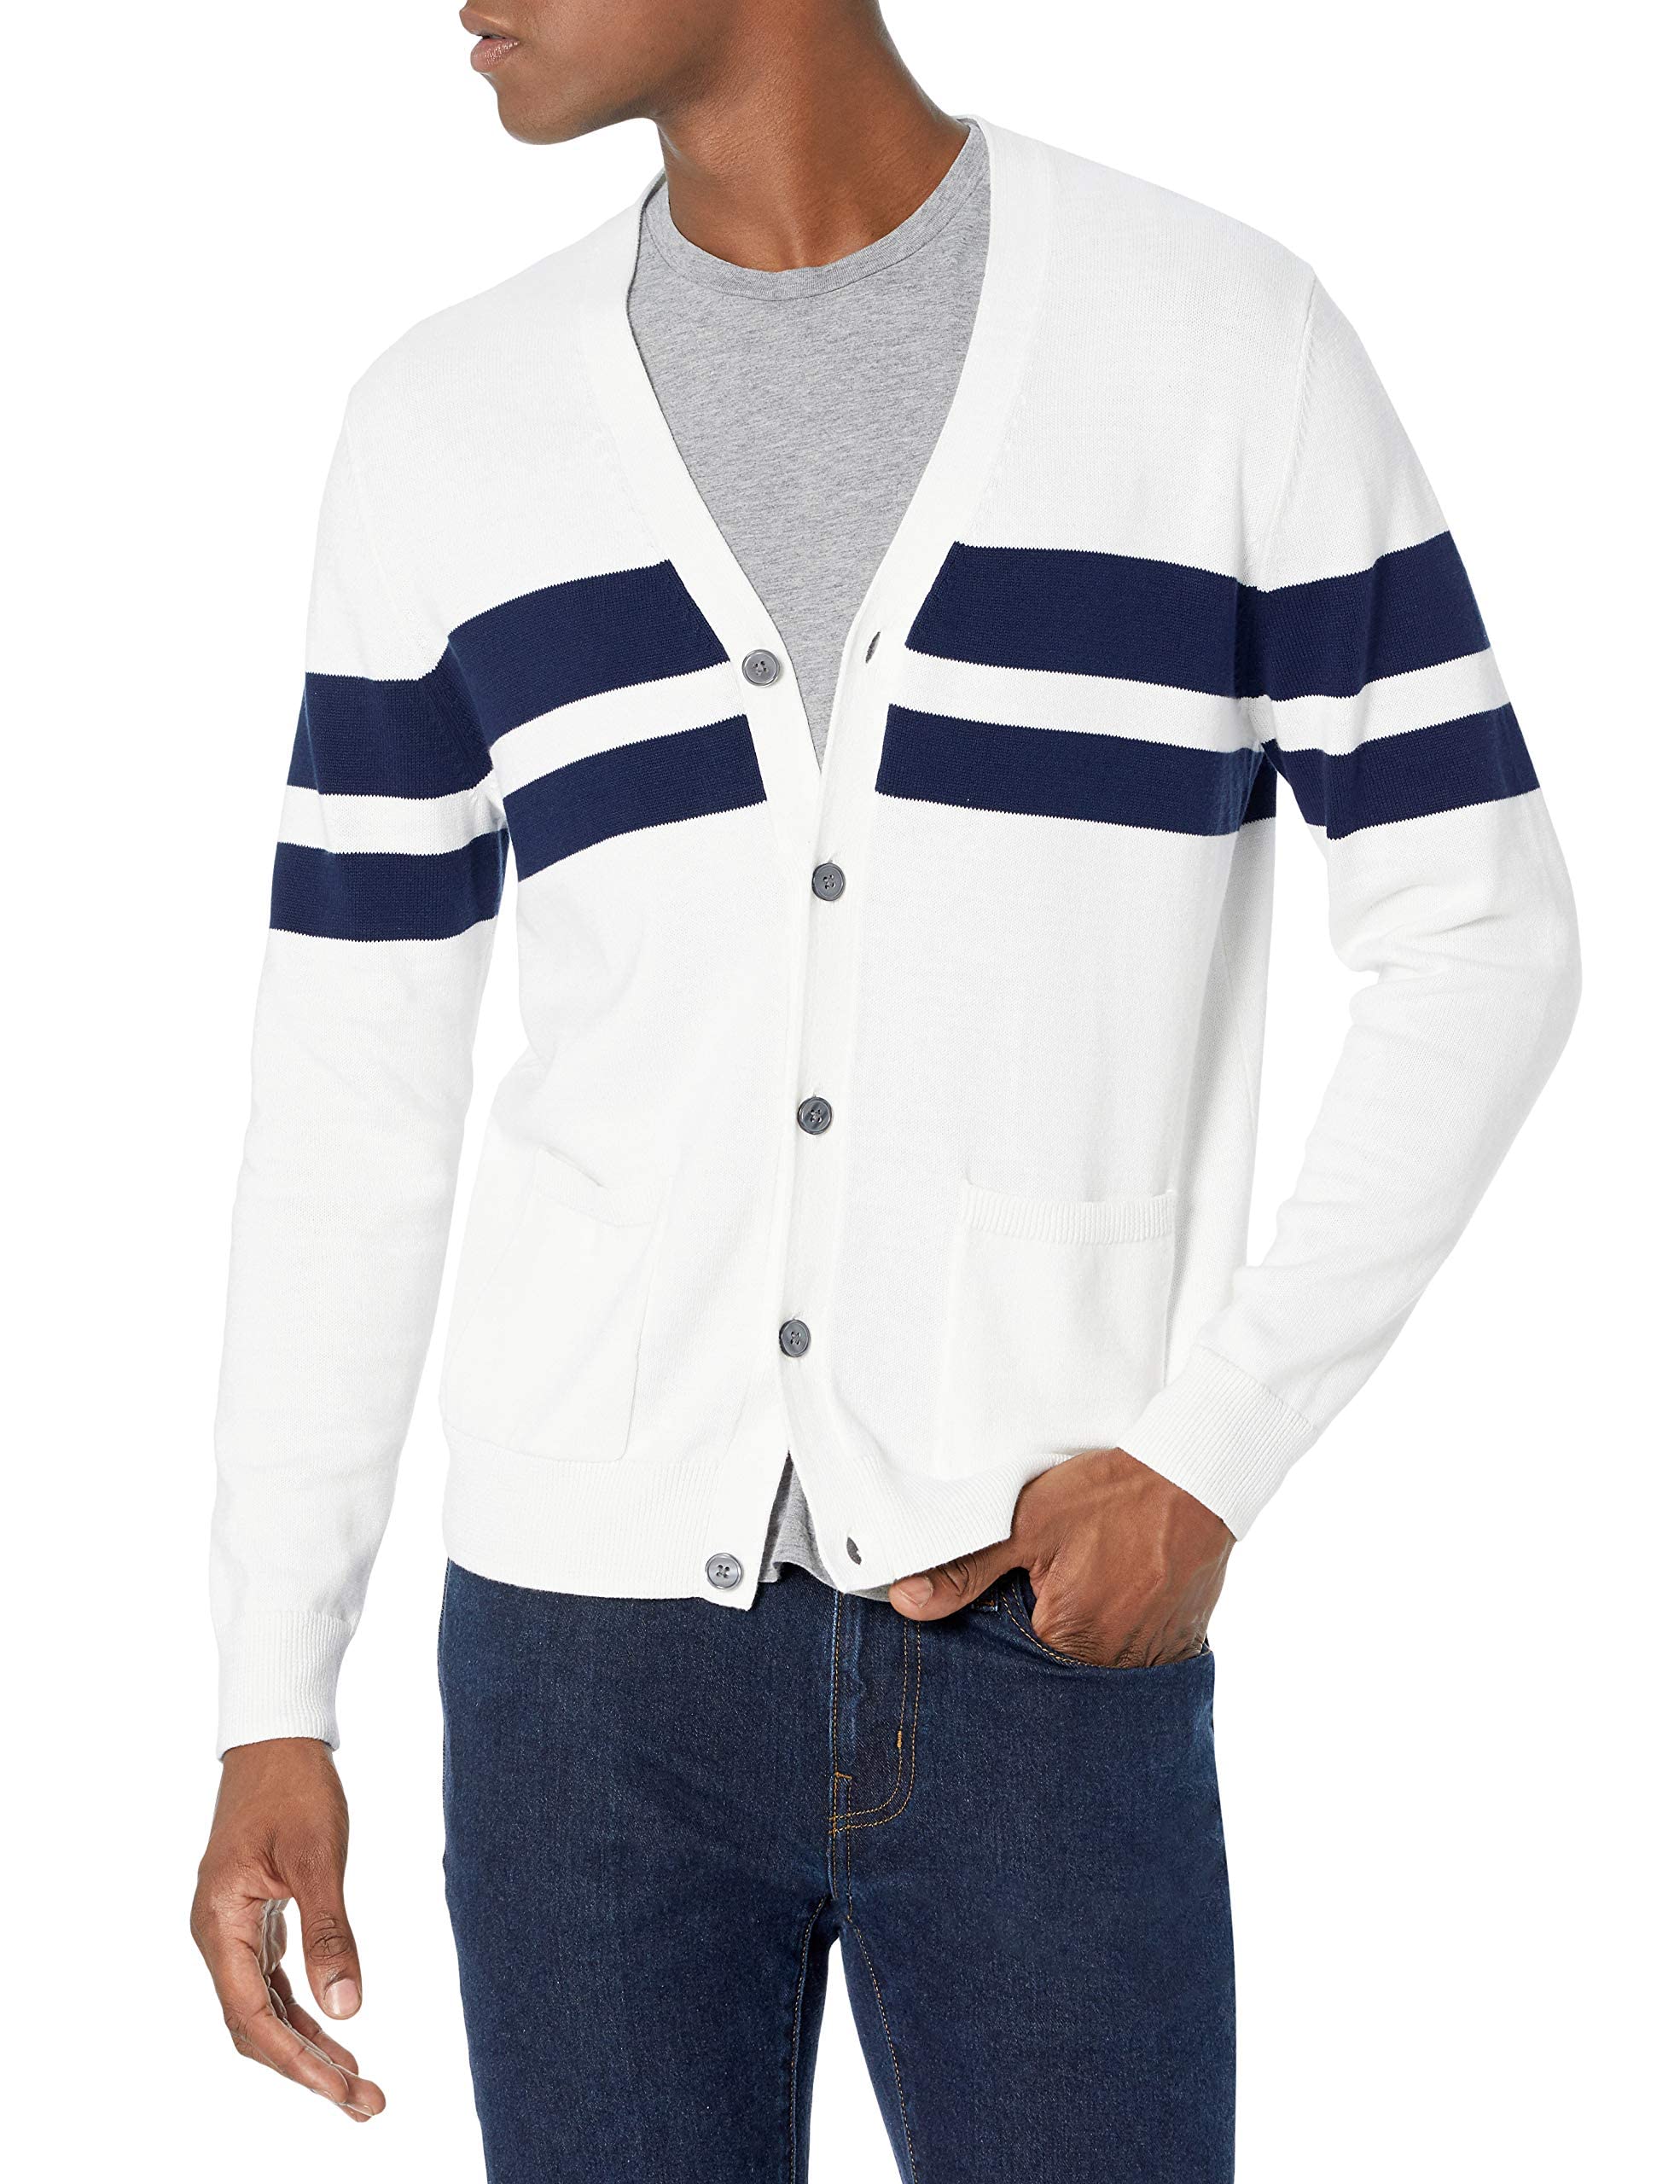 Amazon Essentials Men's Cotton Cardigan Sweater